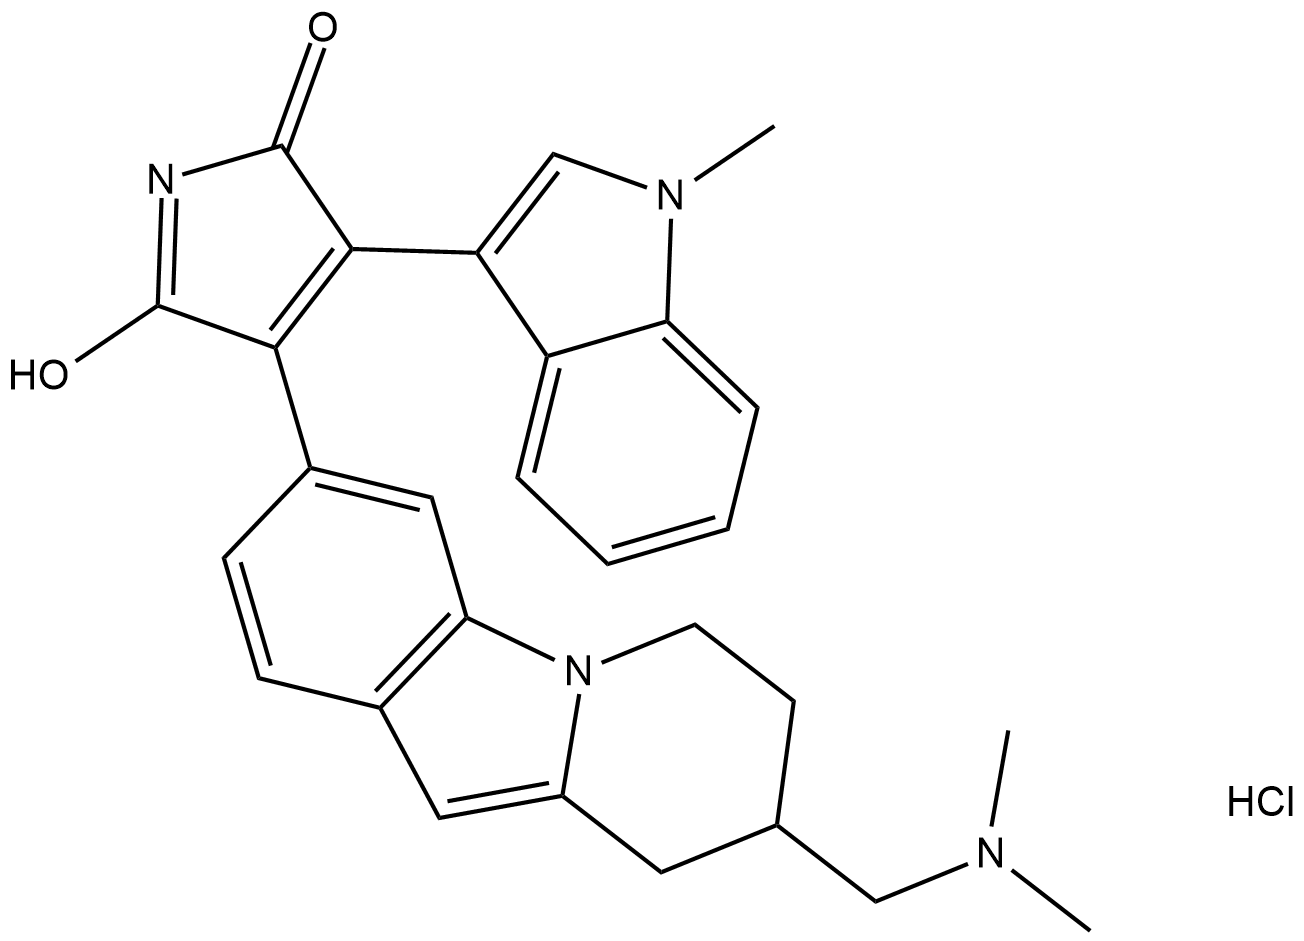 Bisindolylmaleimide XI (hydrochloride) Chemische Struktur